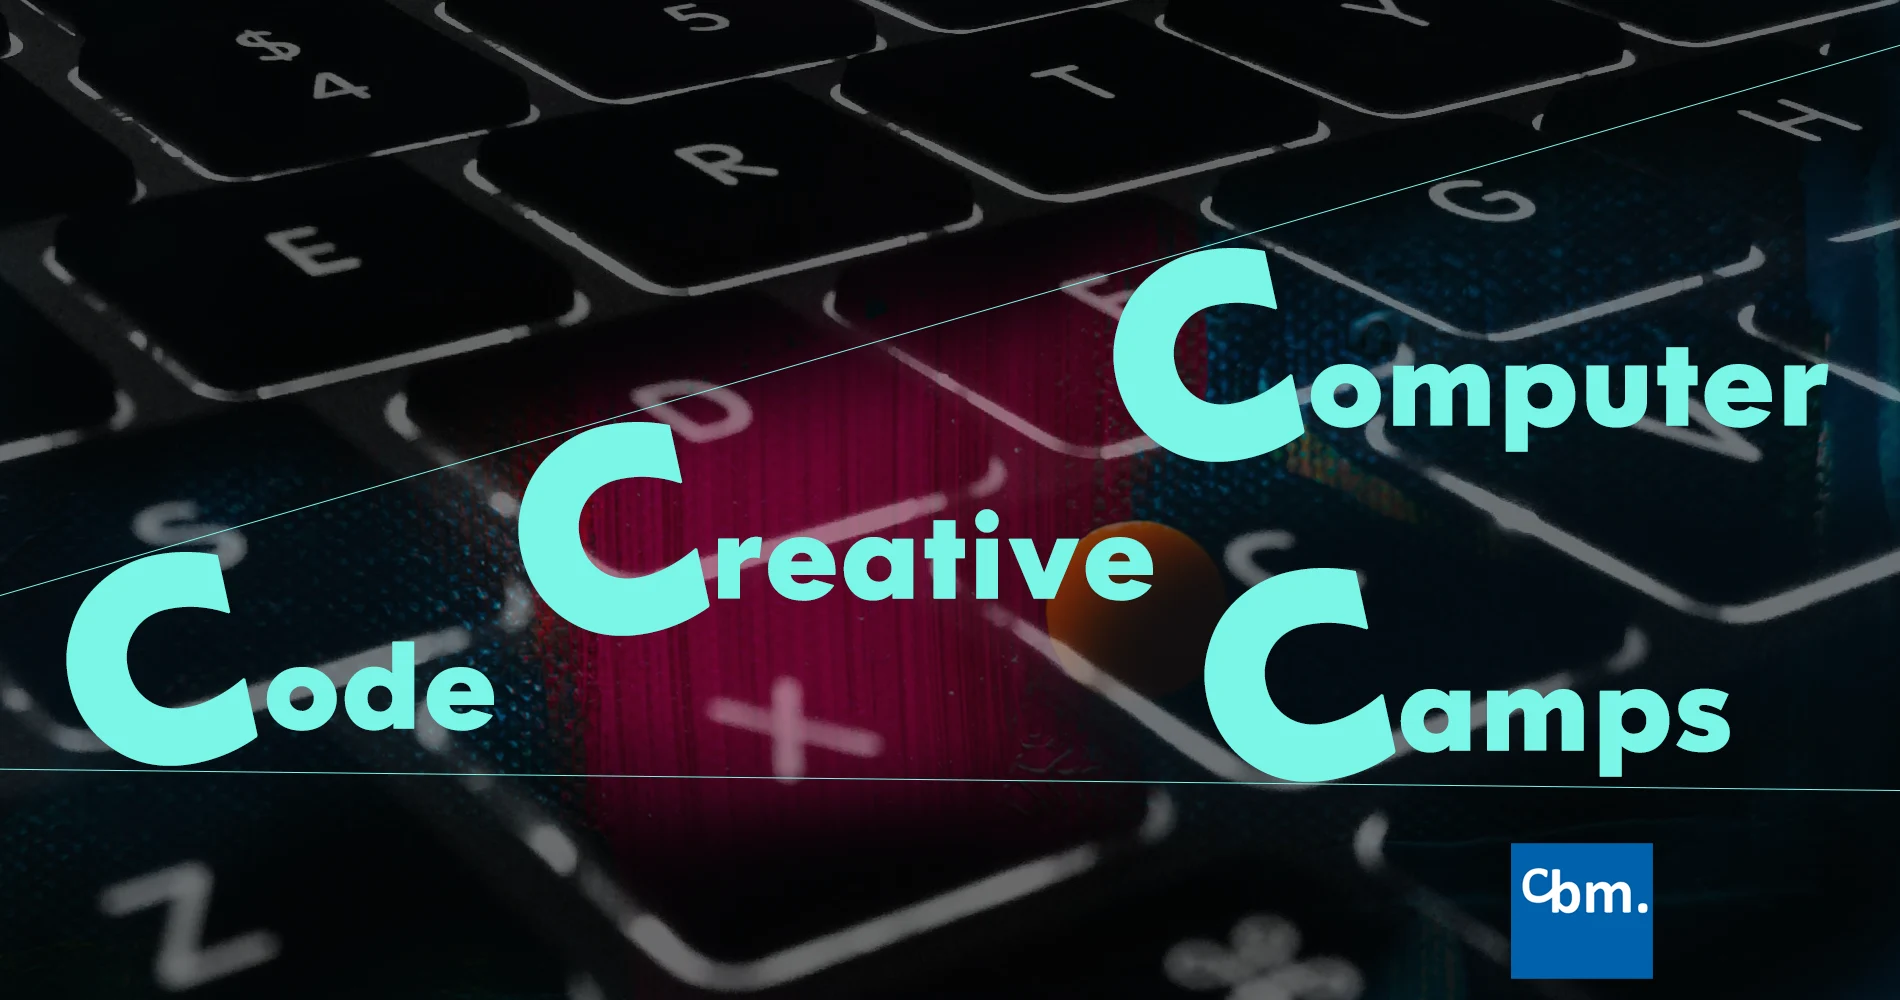 Code-Creative-Computer Camp bei cbm: IT Workshops zum Testen!